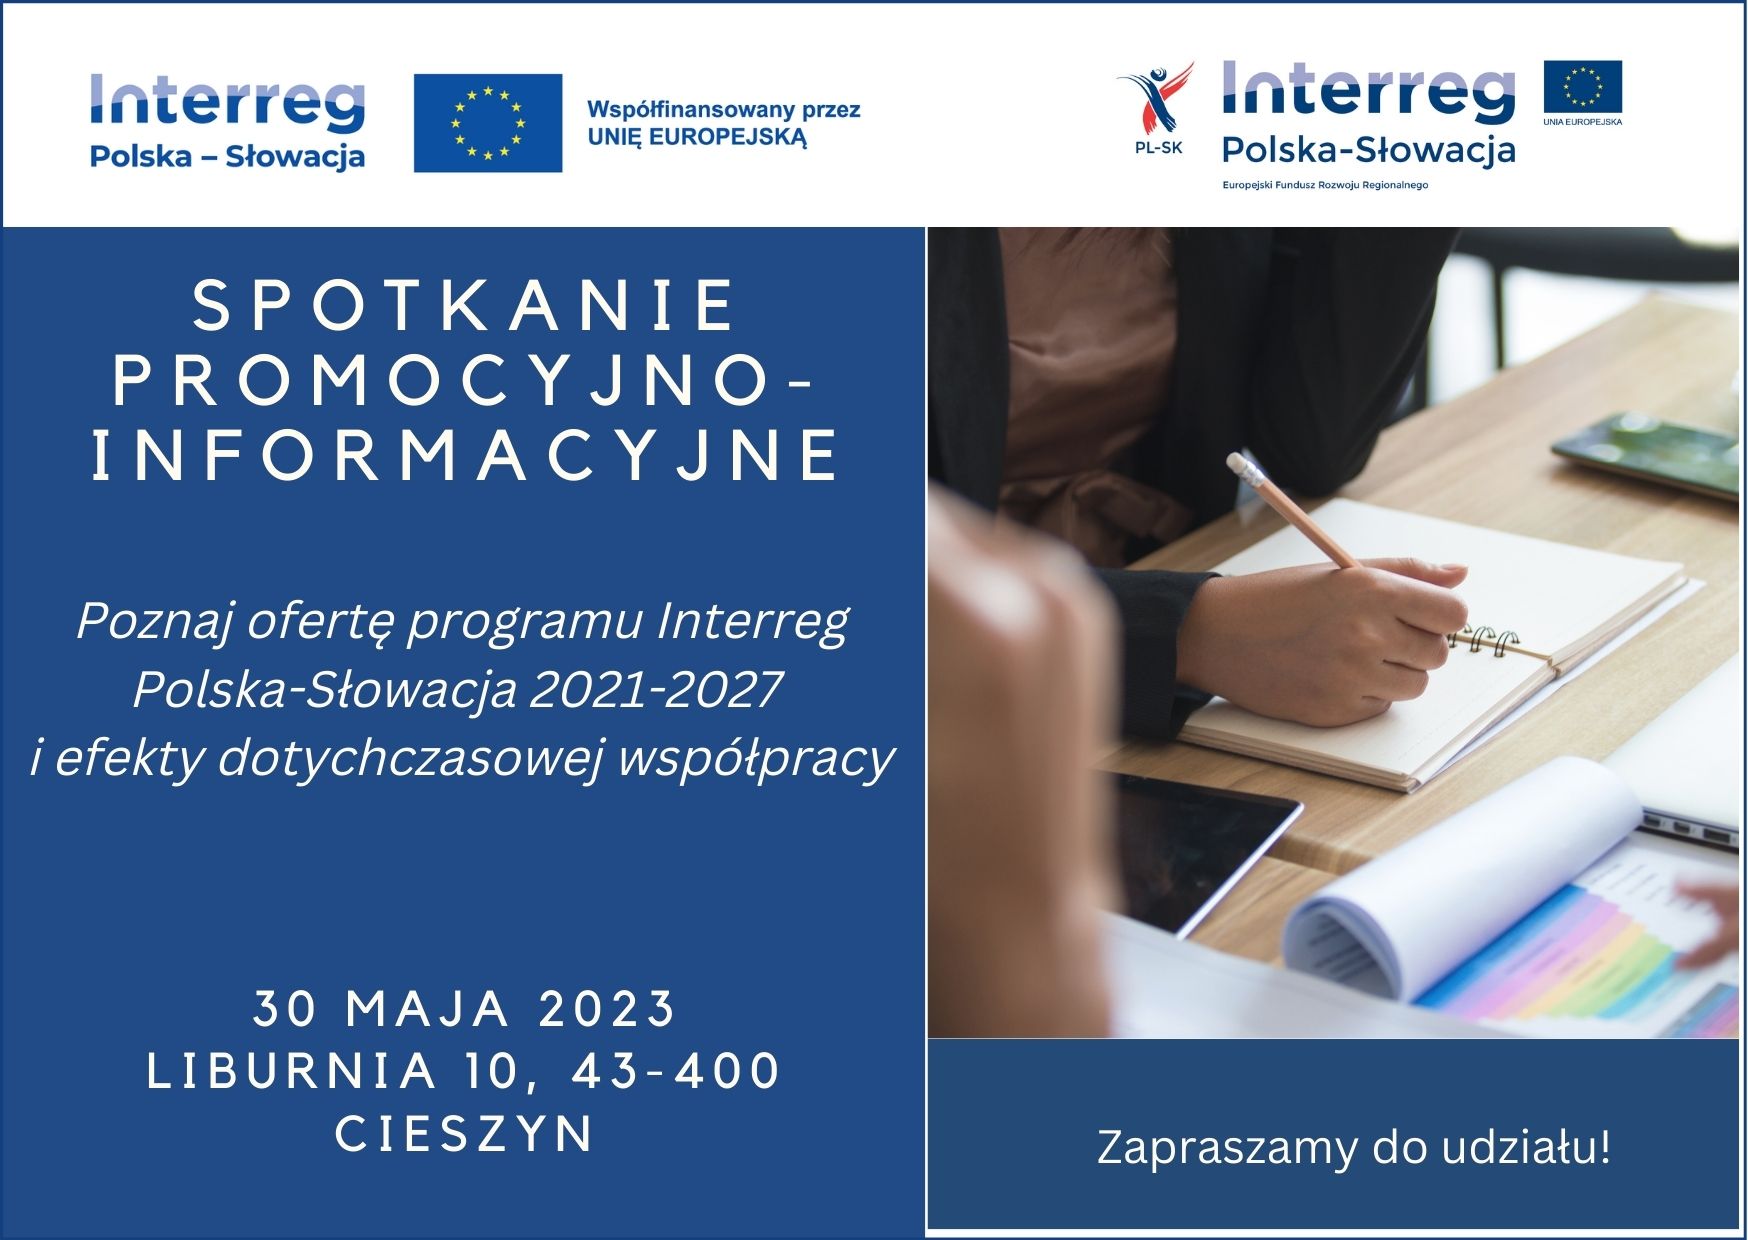 Spotkanie promocyjno-informacyjne nt. Interreg Polska-Słowacja -30.05.2023